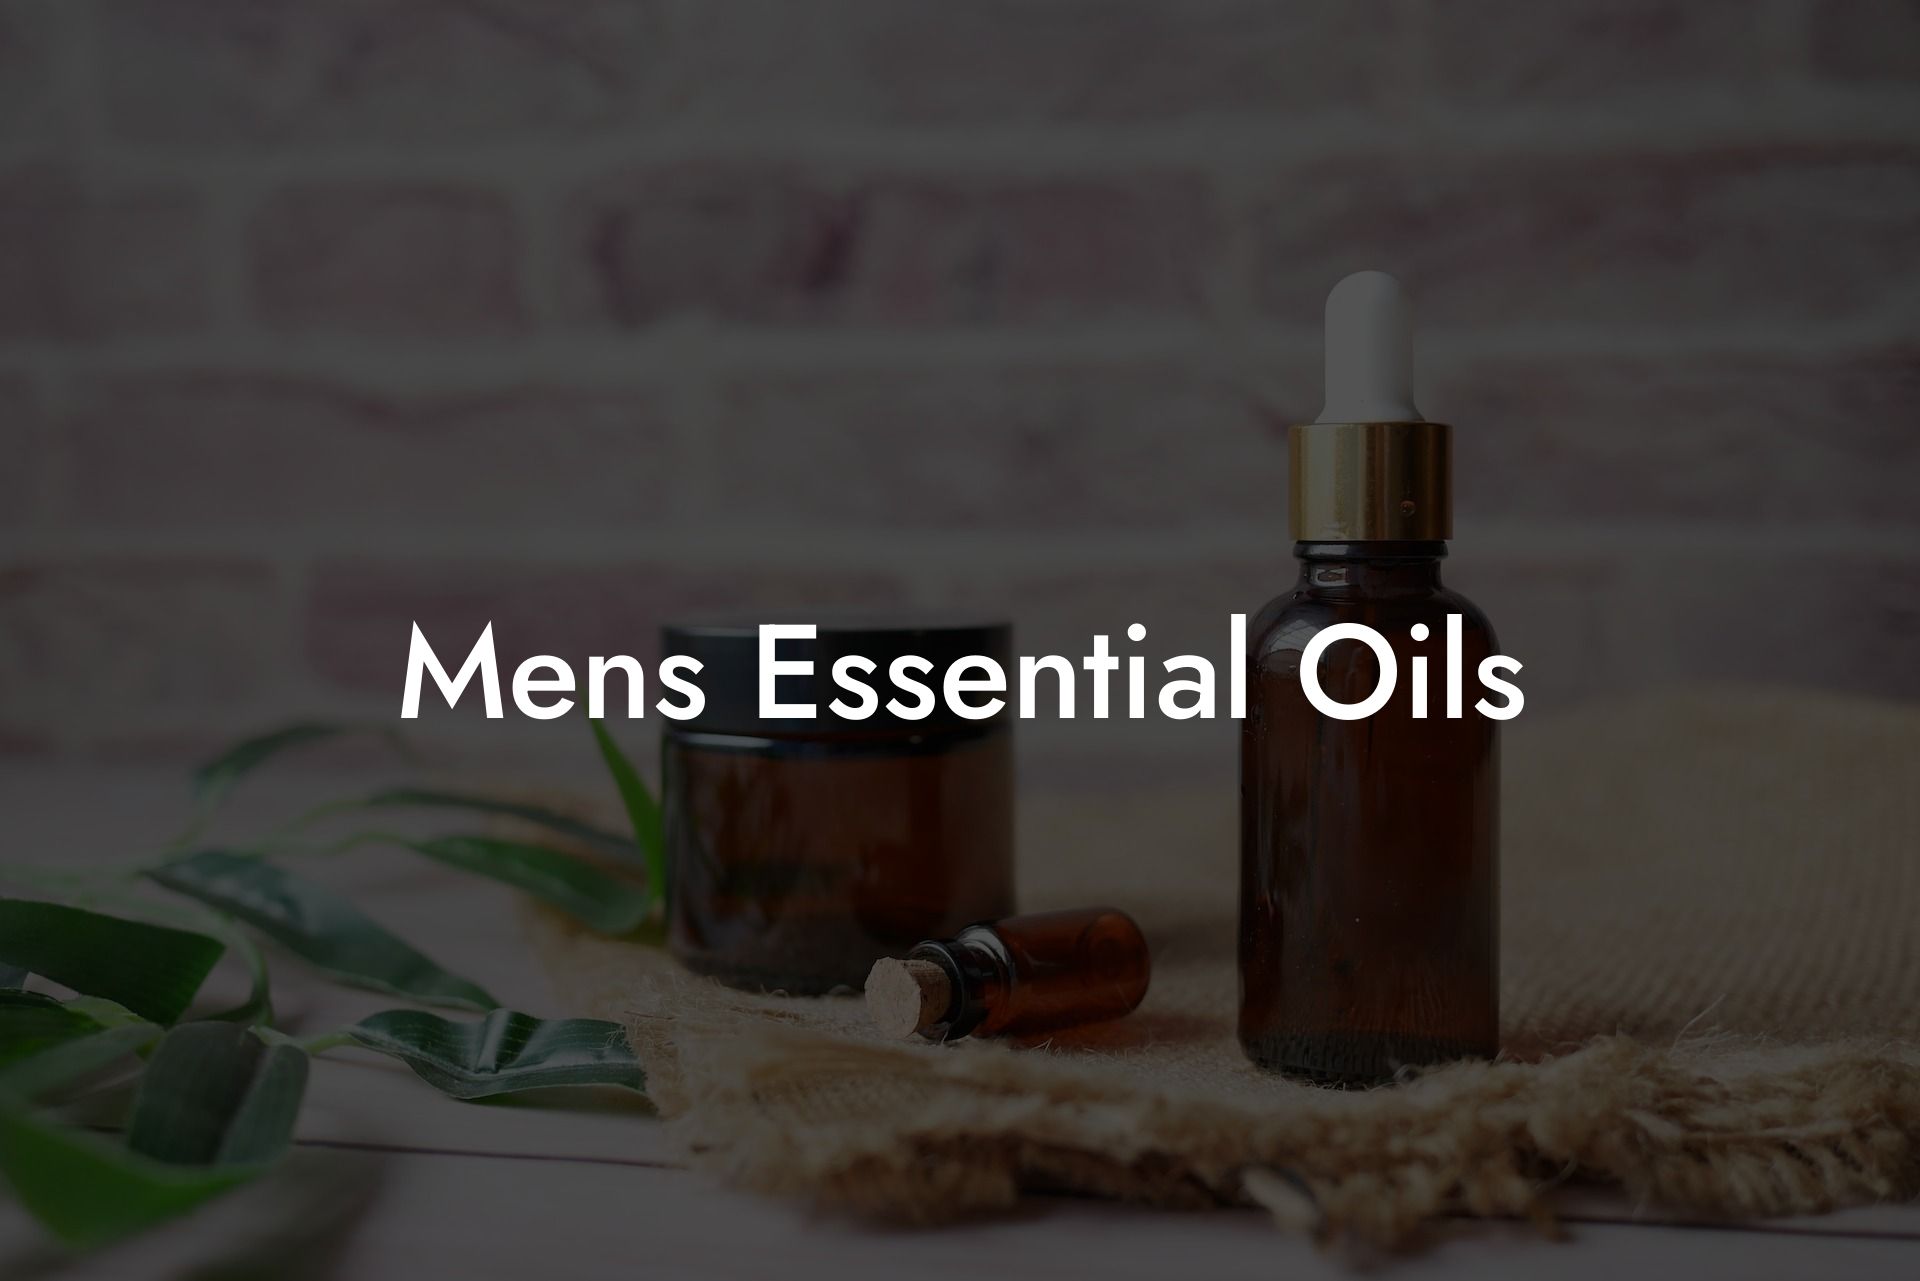 Men's Essential Oils